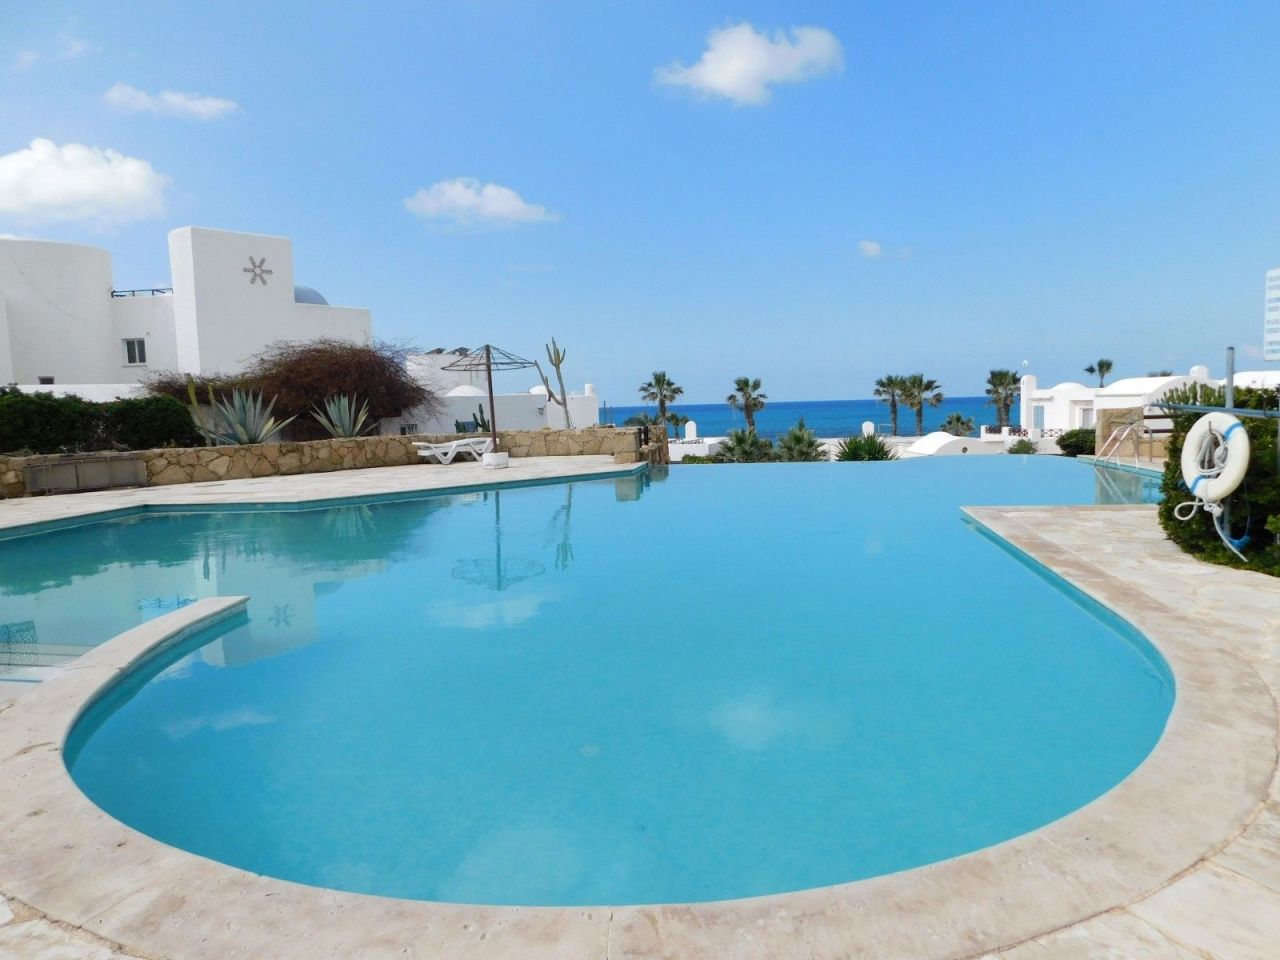 Villa en Pafos, Chipre - imagen 1